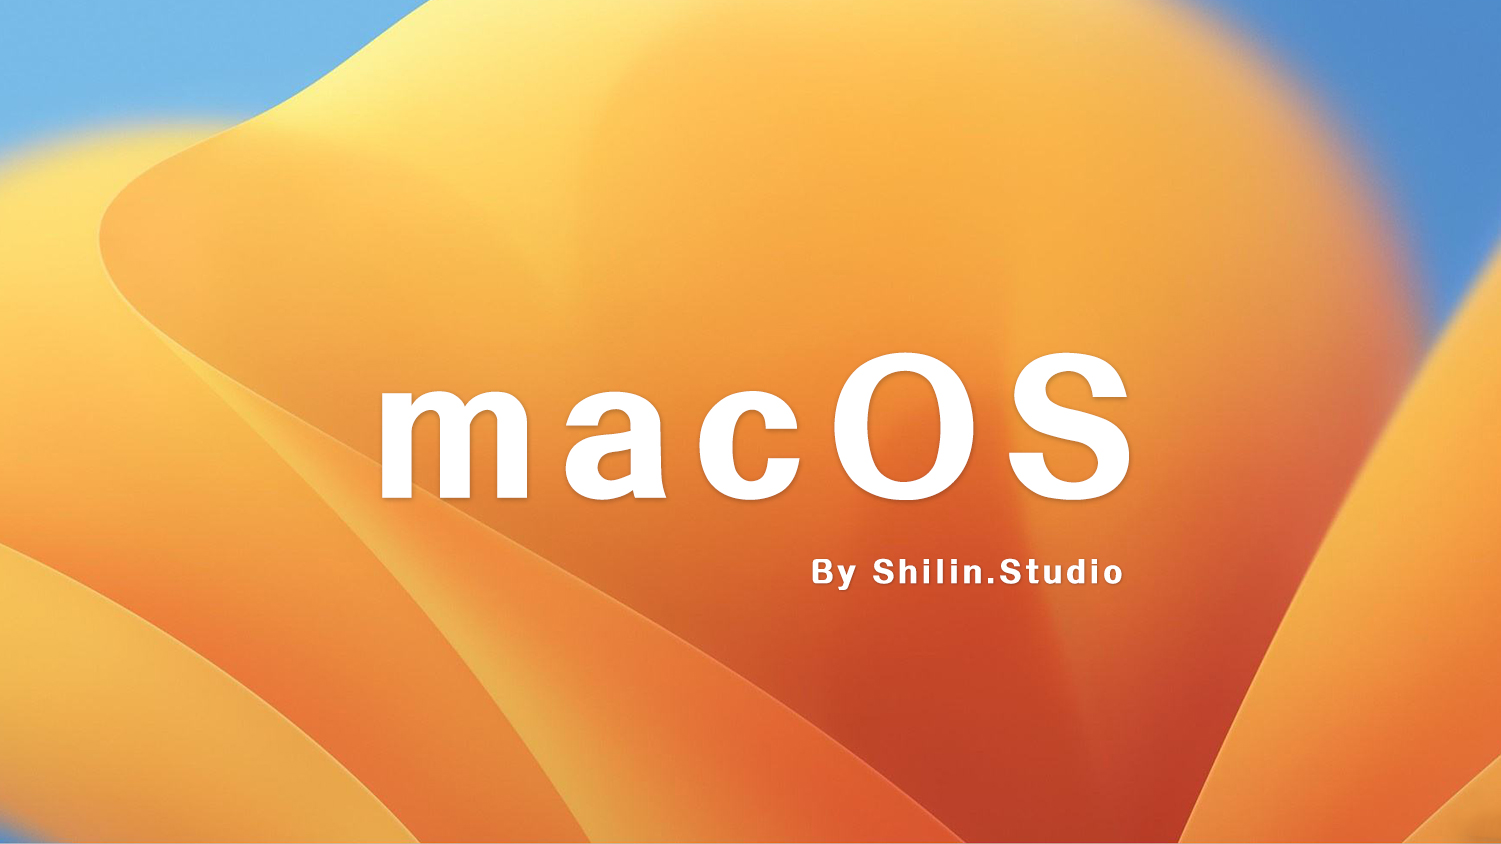 【解压密码合集】苹果macOS可引导可虚拟机安装的纯净版苹果OS系统ISO镜像安装包解压密码合集